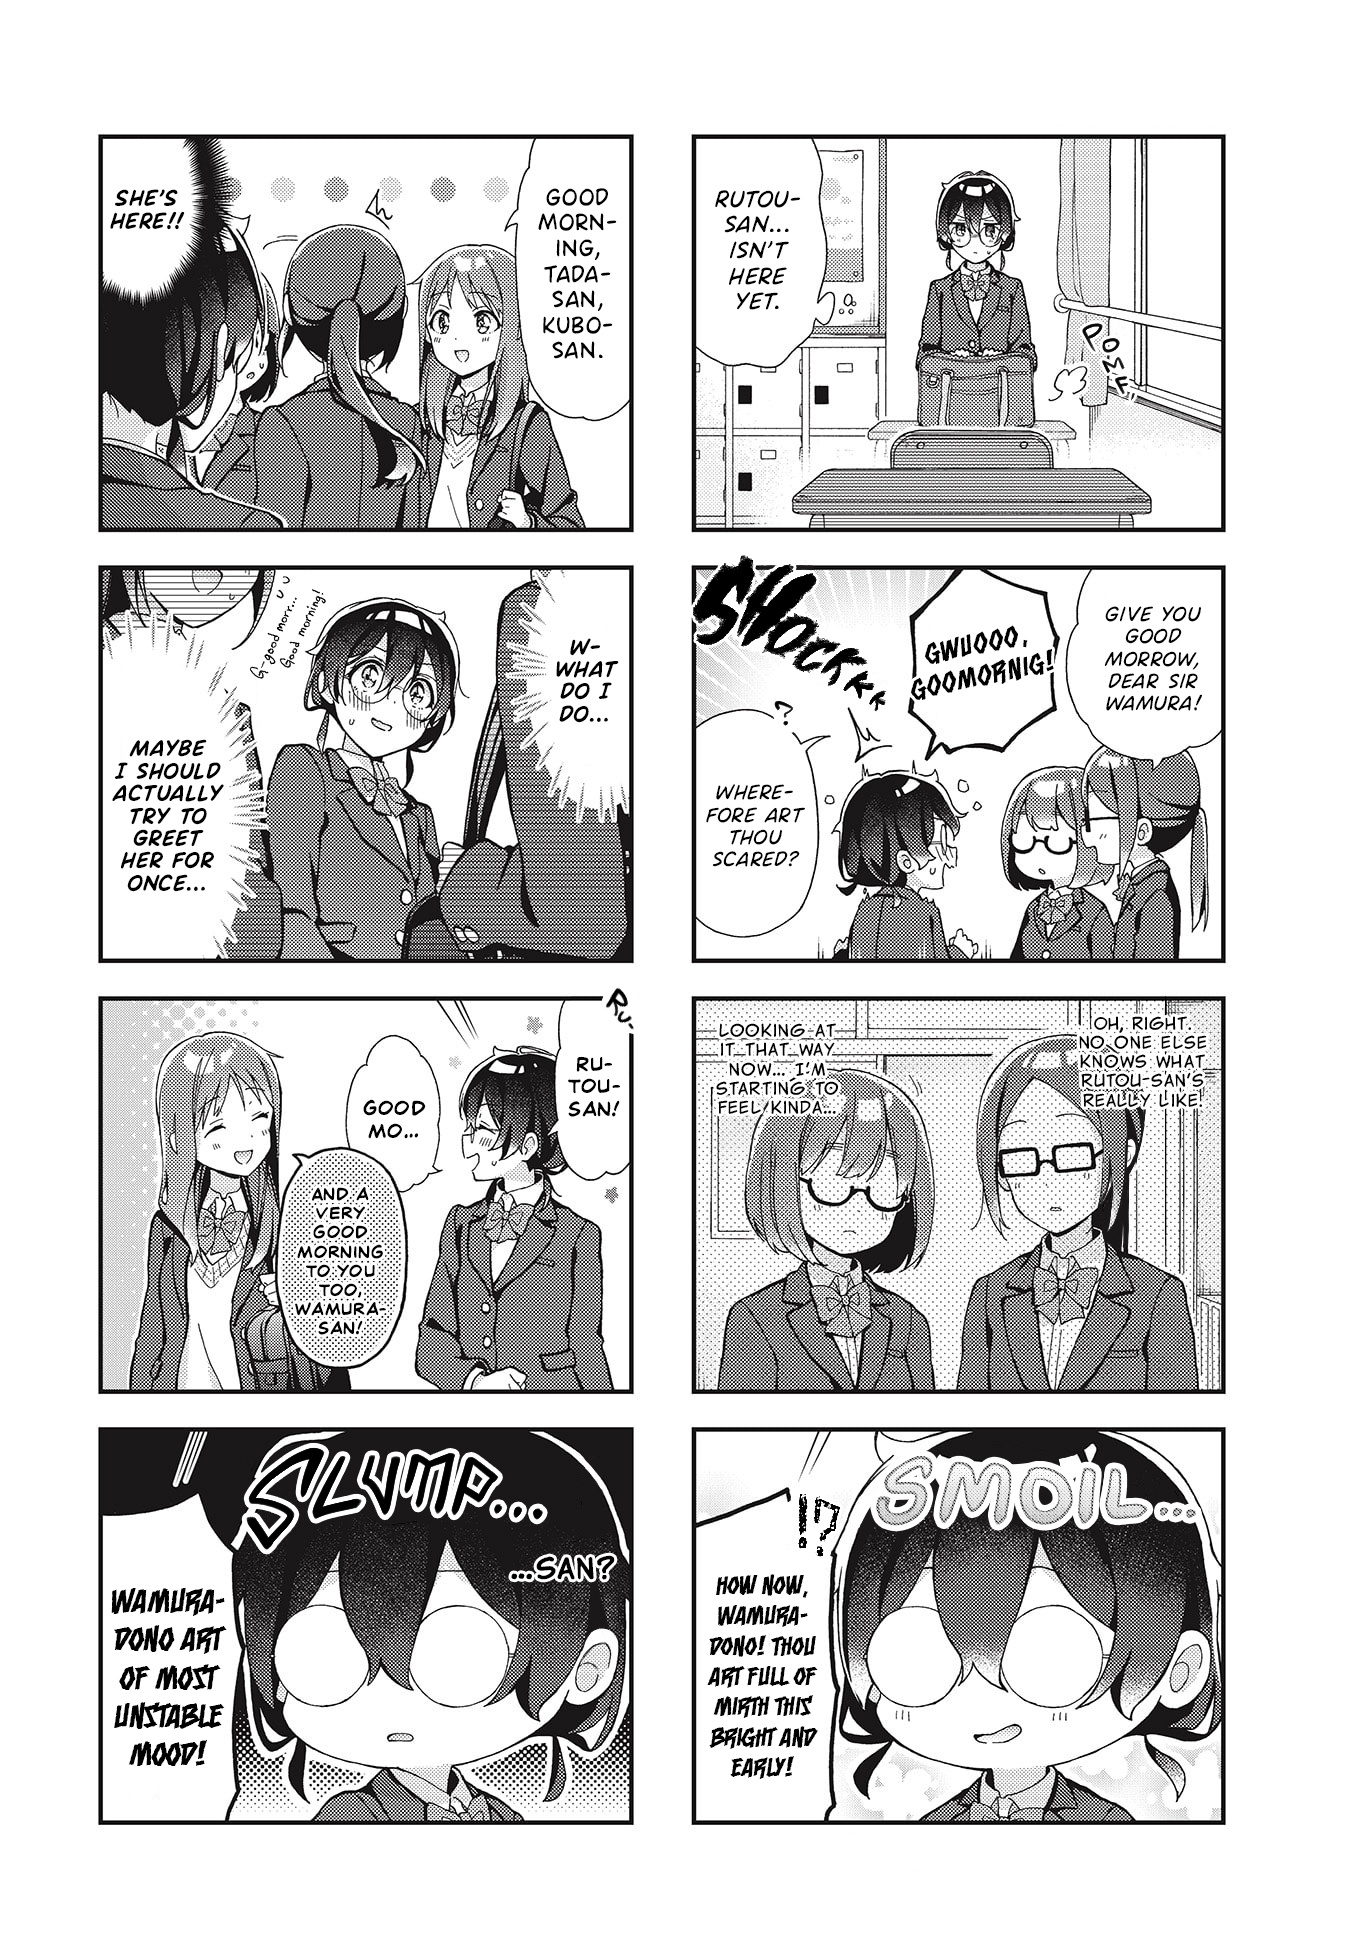 Rutou-San Ni Wa Kanaimasen! Vol.1 Chapter 2: Like A Manga Protag - Picture 2